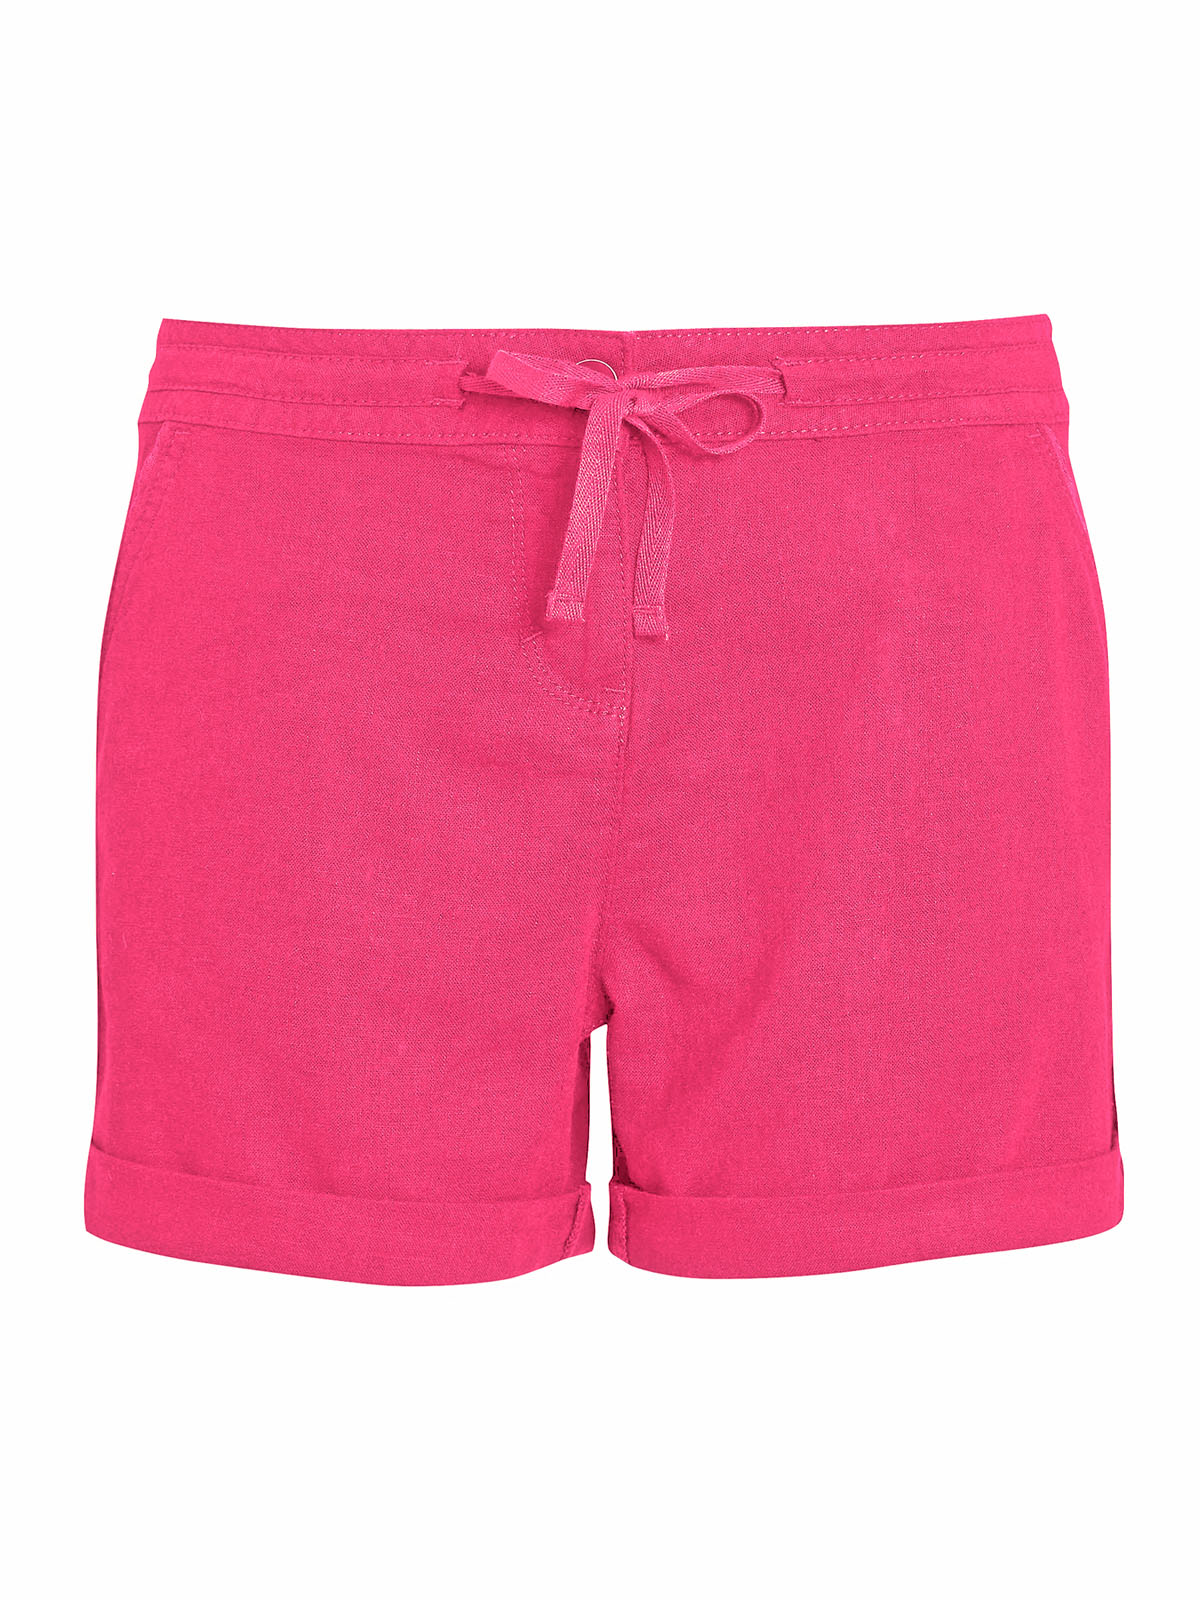 N3XT PINK Linen Blend Drawstring Waist Shorts - Size 12 to 28